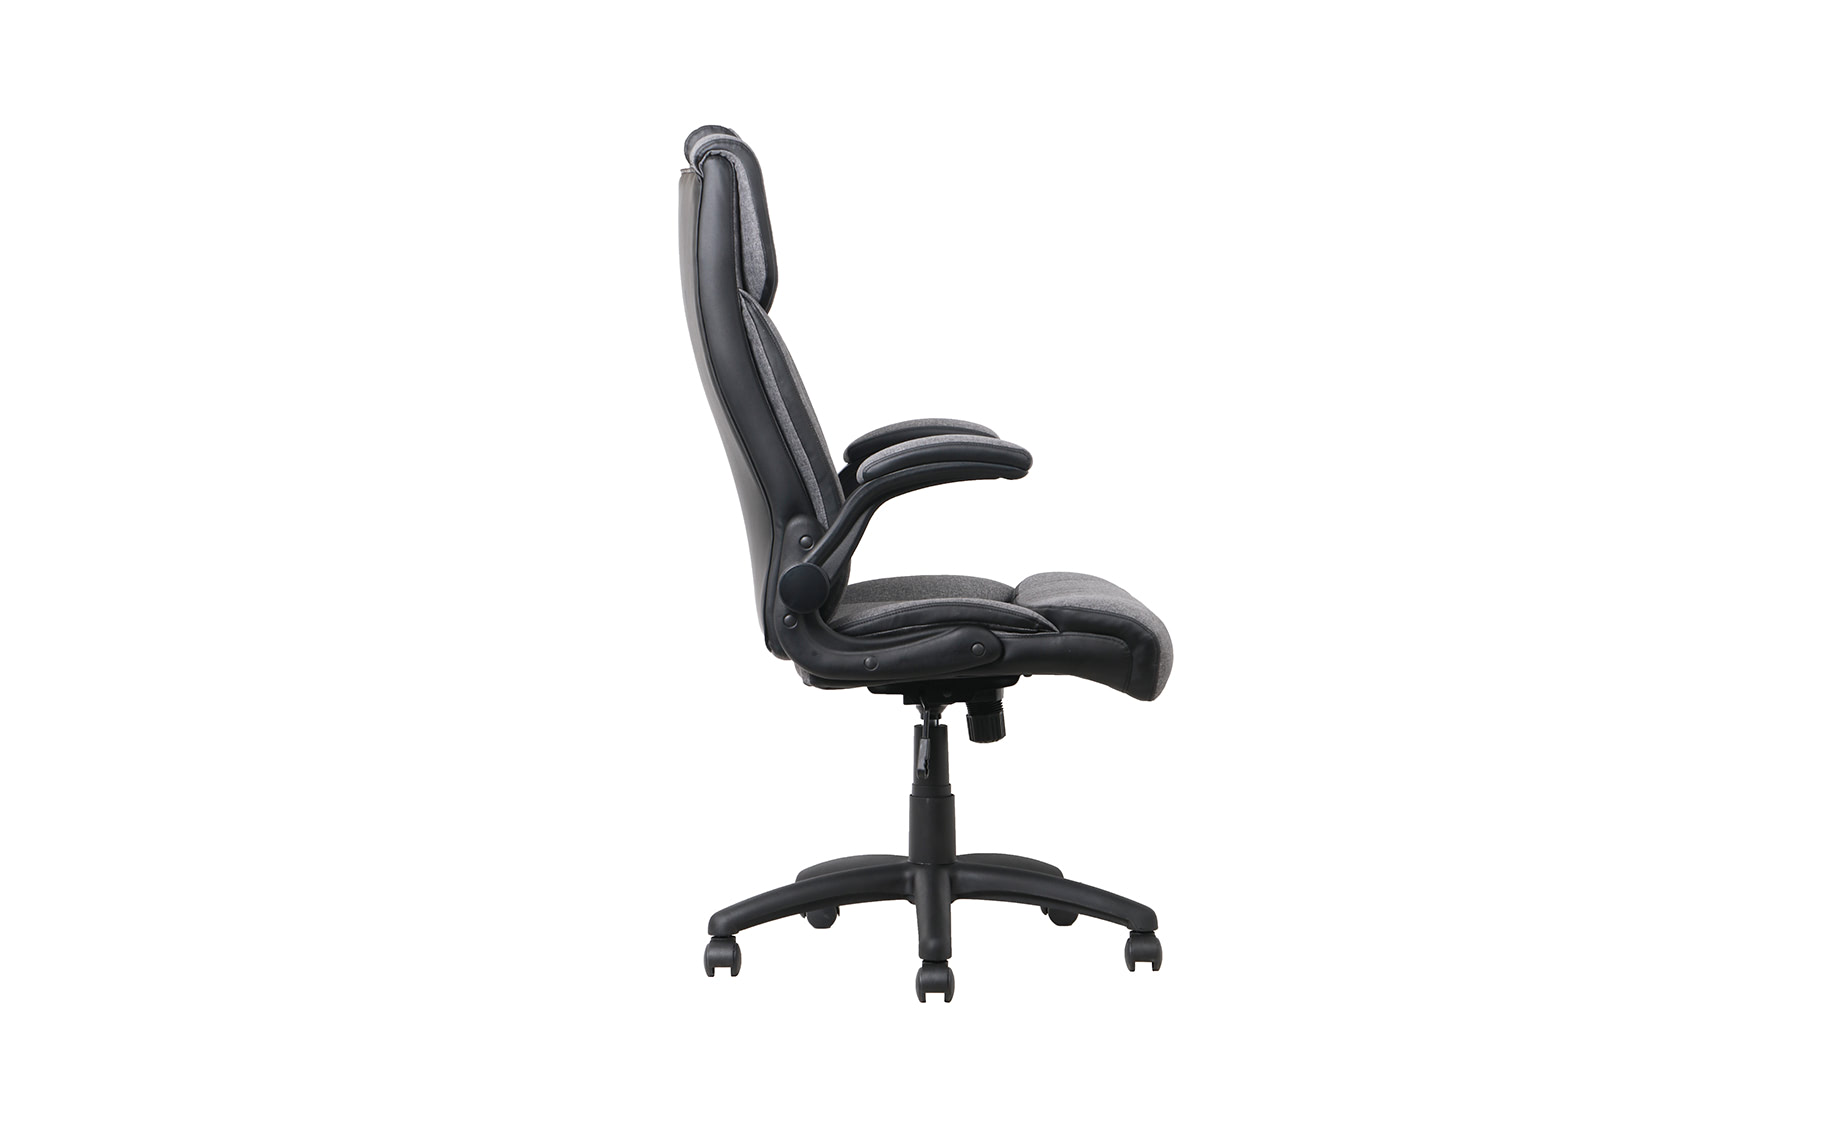 Karina kancelarijska fotelja 71x69,5x114-123,5 cm sivo/crna